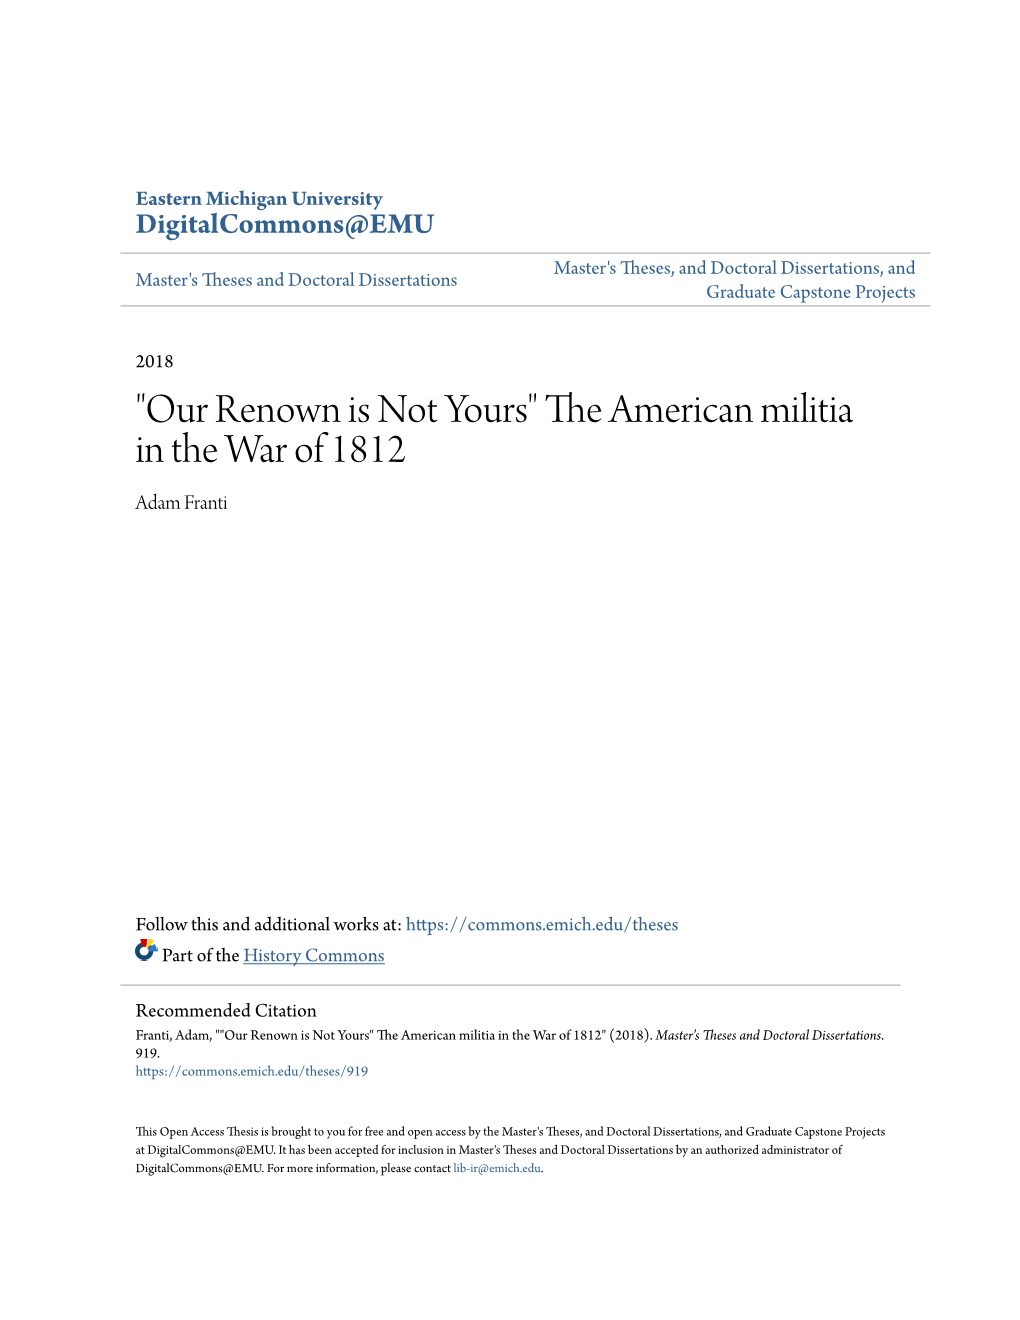 The American Militia in the War of 1812 Adam Franti